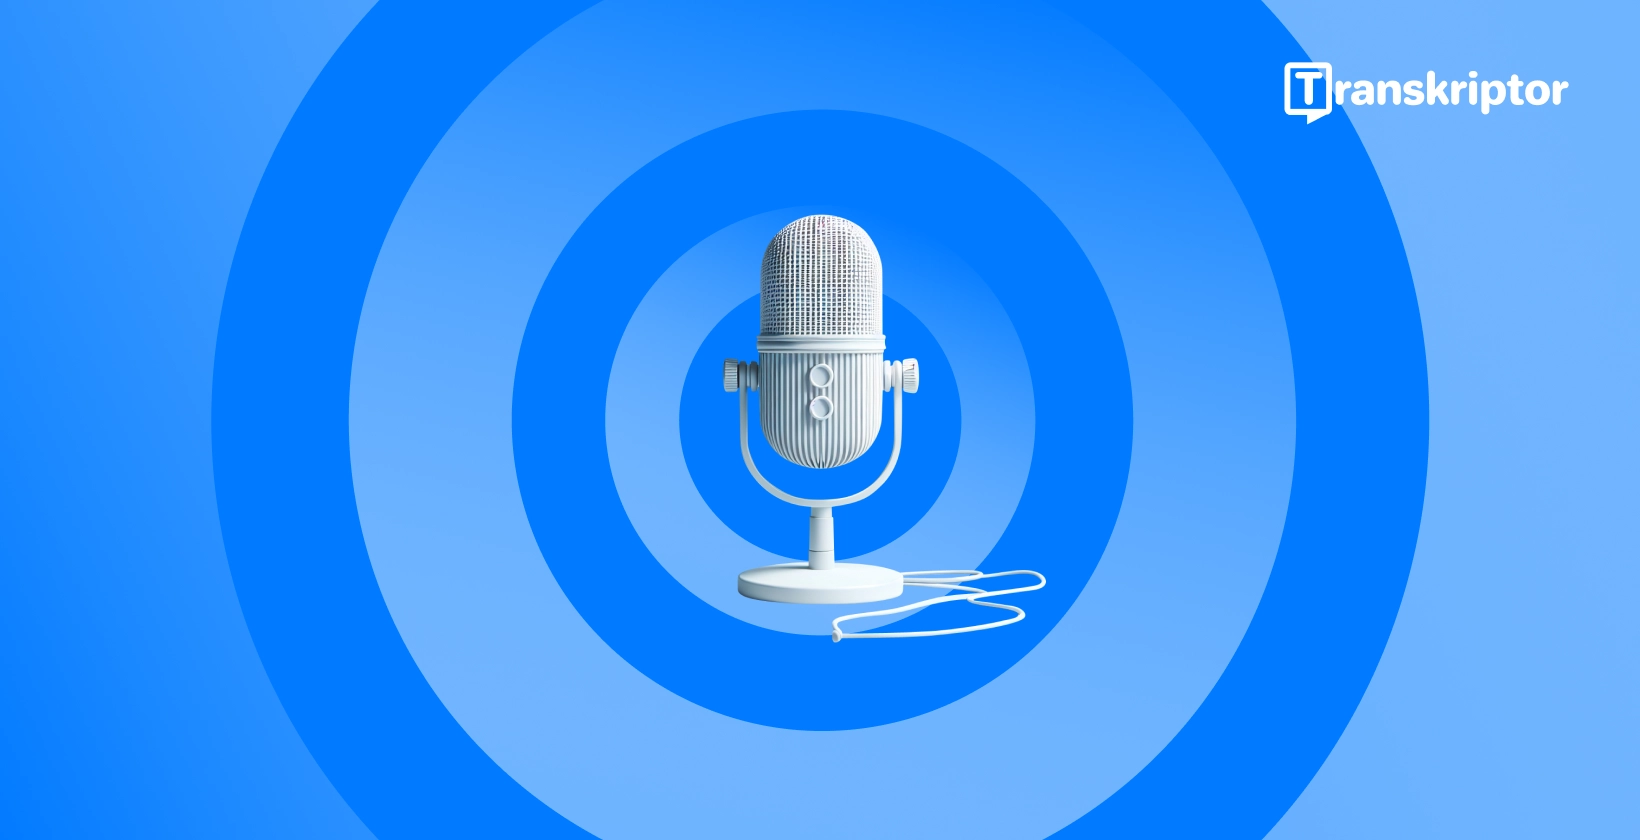 Nowoczesny mikrofon ustawiony na niebieskim tle, symbolizujący funkcje dyktowania głosu w programie Microsoft Word.